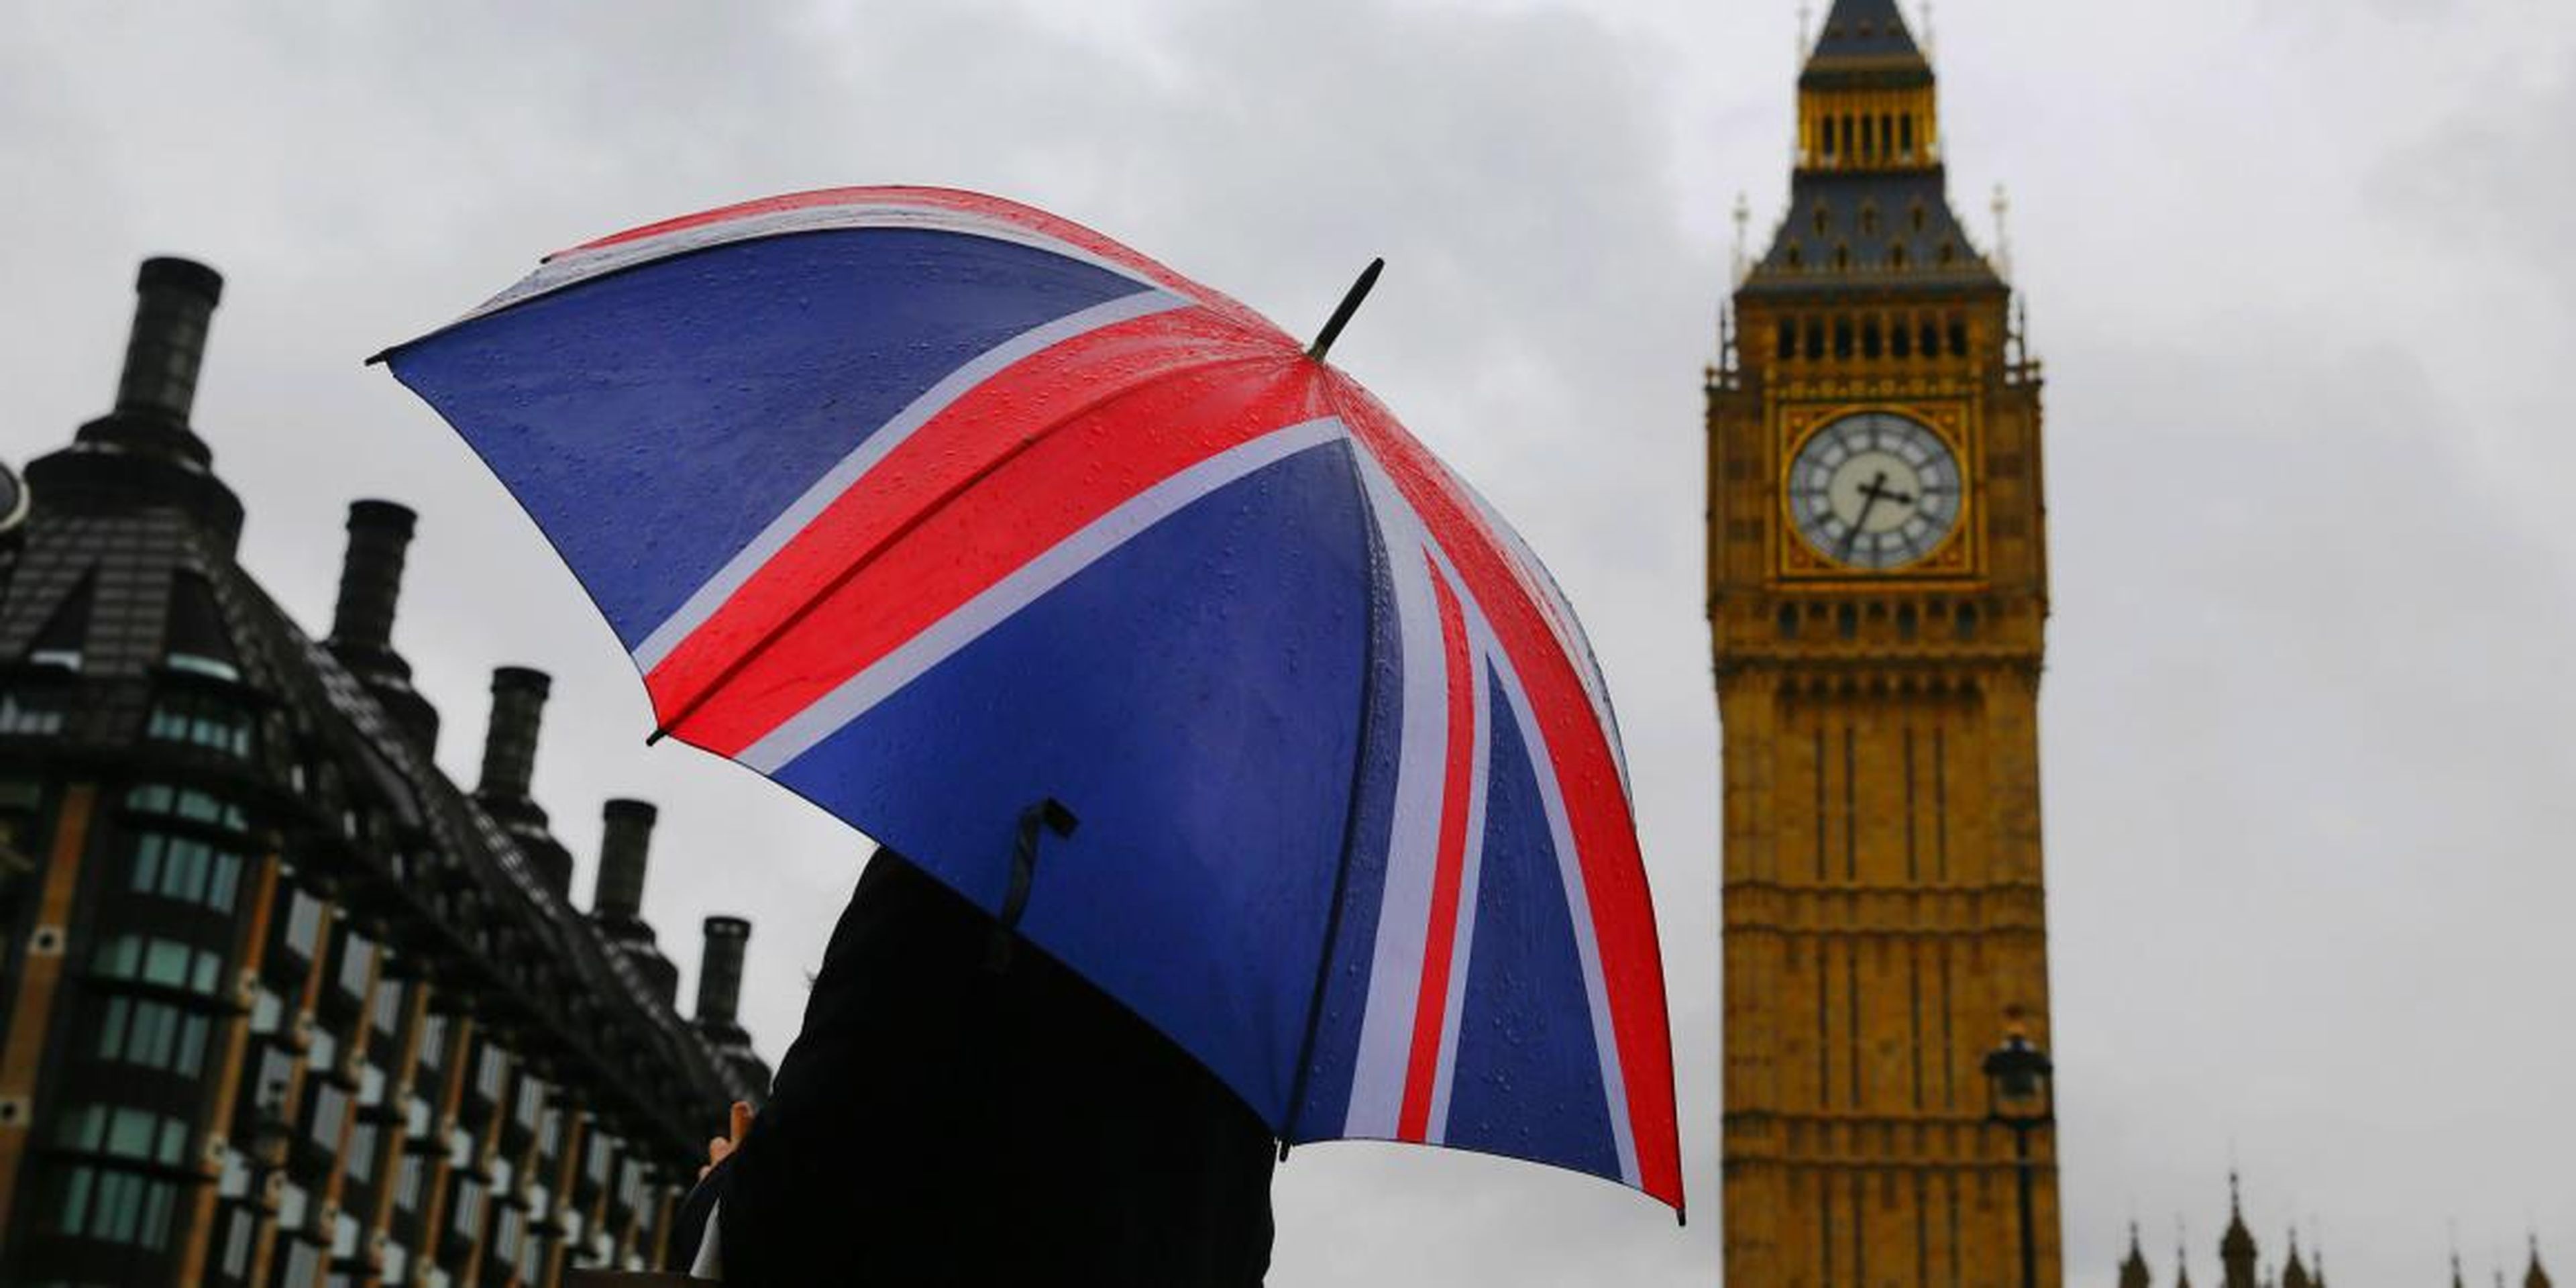 Una mujer lleva un paraguas con la bandera de Reino Unido frente a la torre del Big Ben en Londres, el 4 de octubre de 2014.